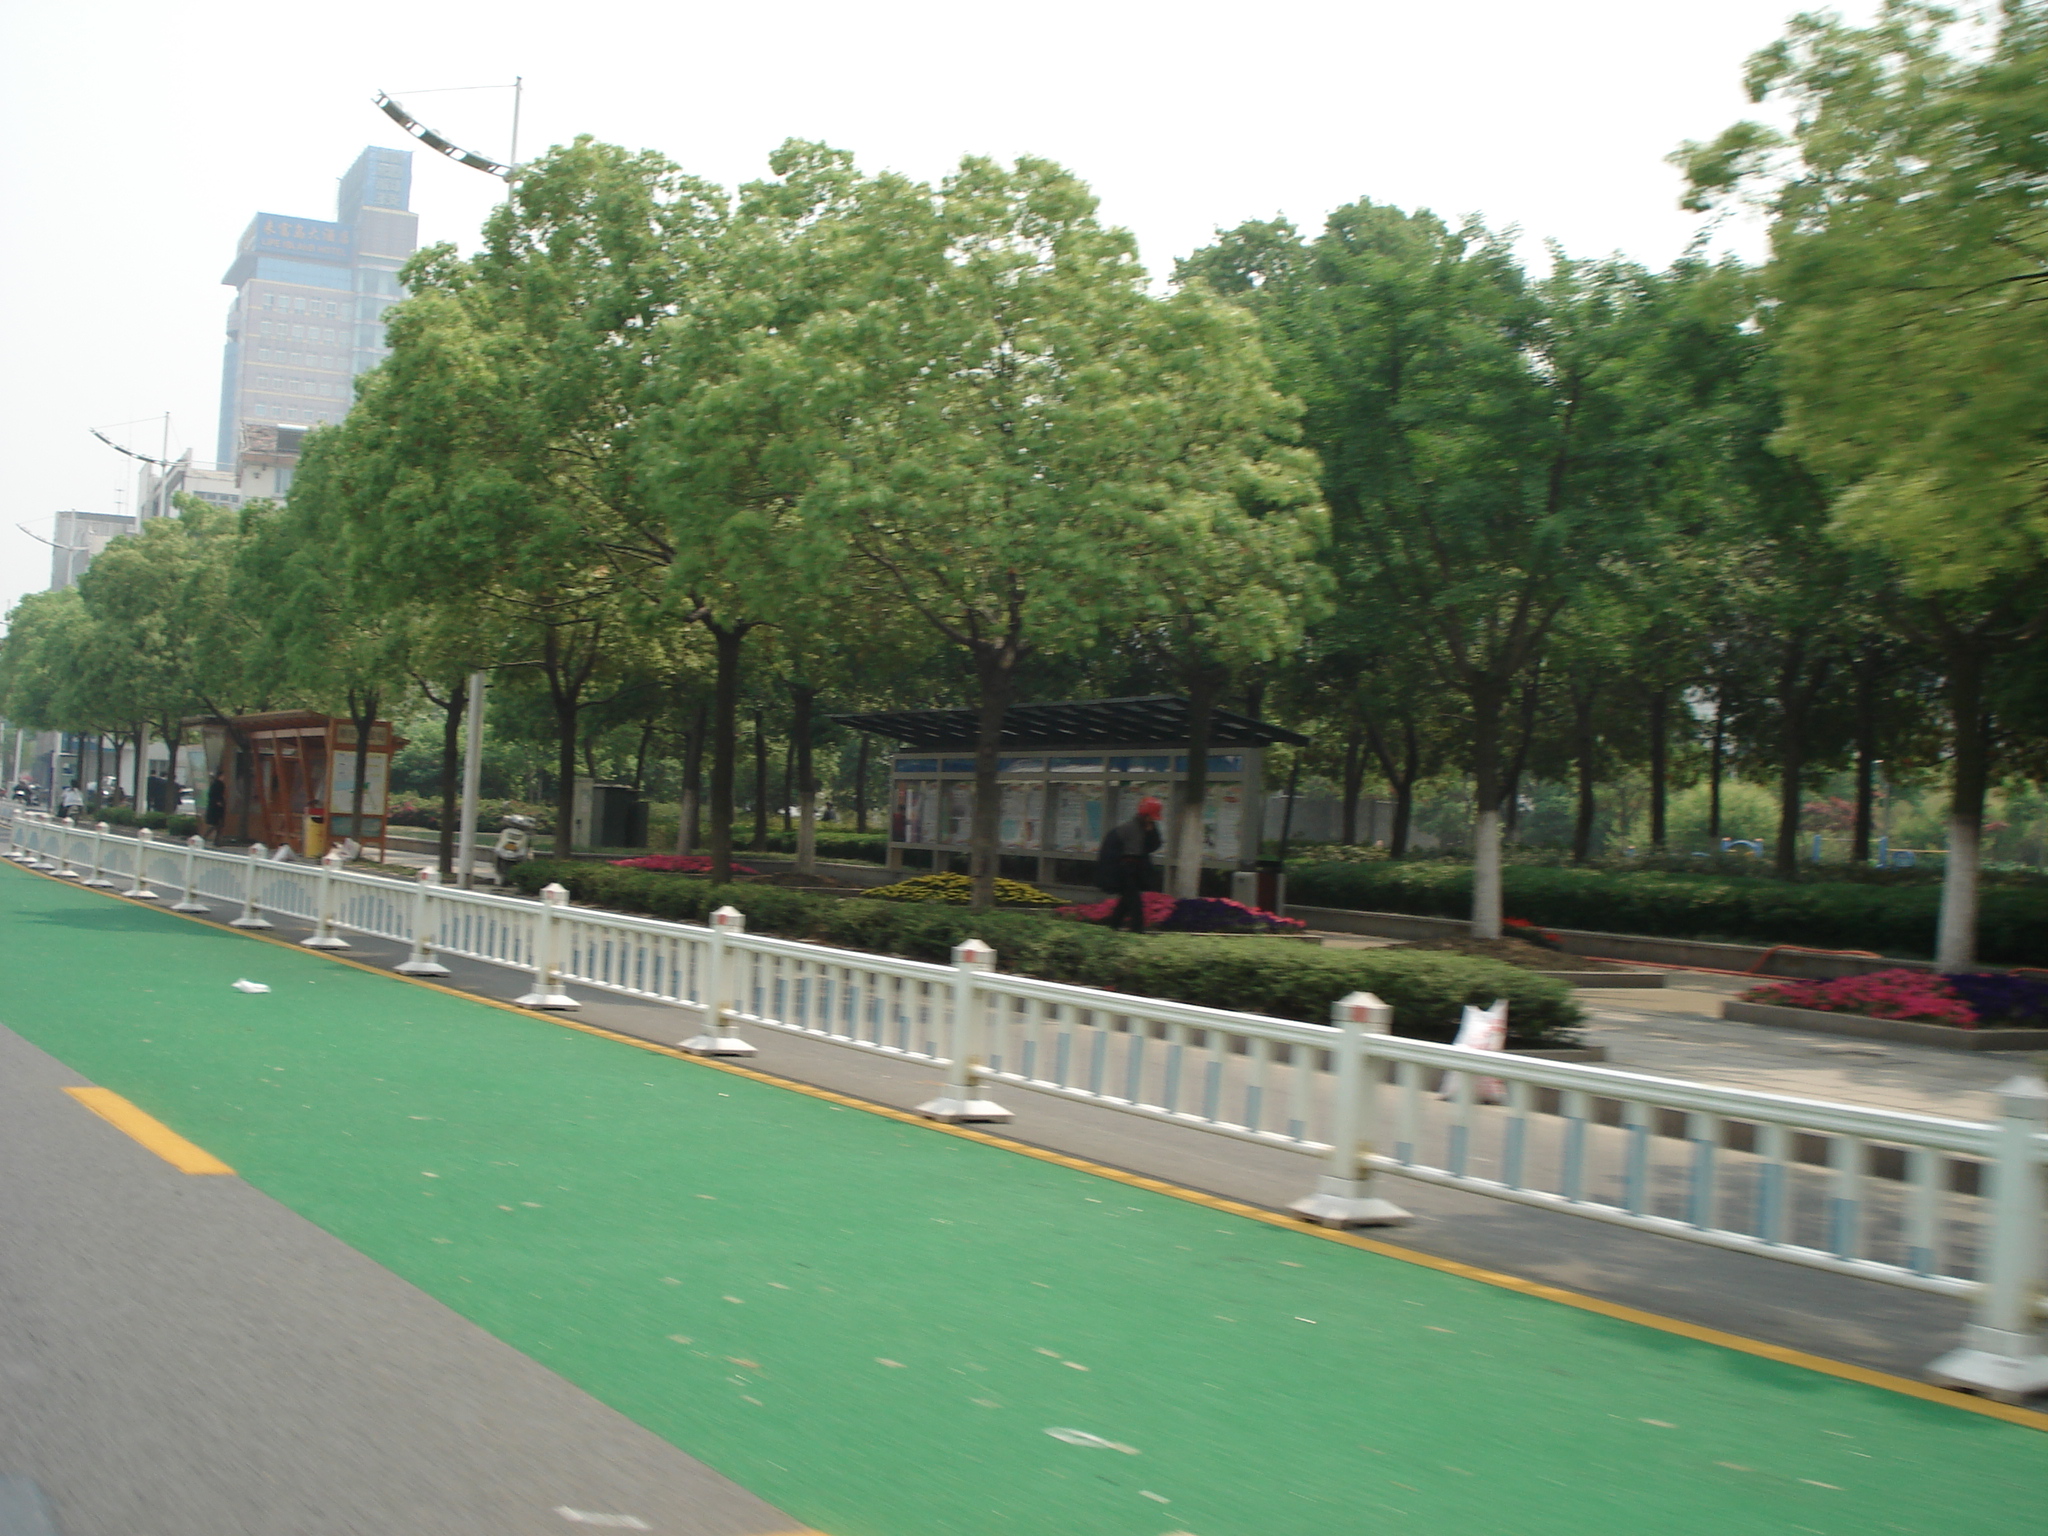 原装彩色路面价格_彩色路面造价相关-上海柯路美道路工程有限公司